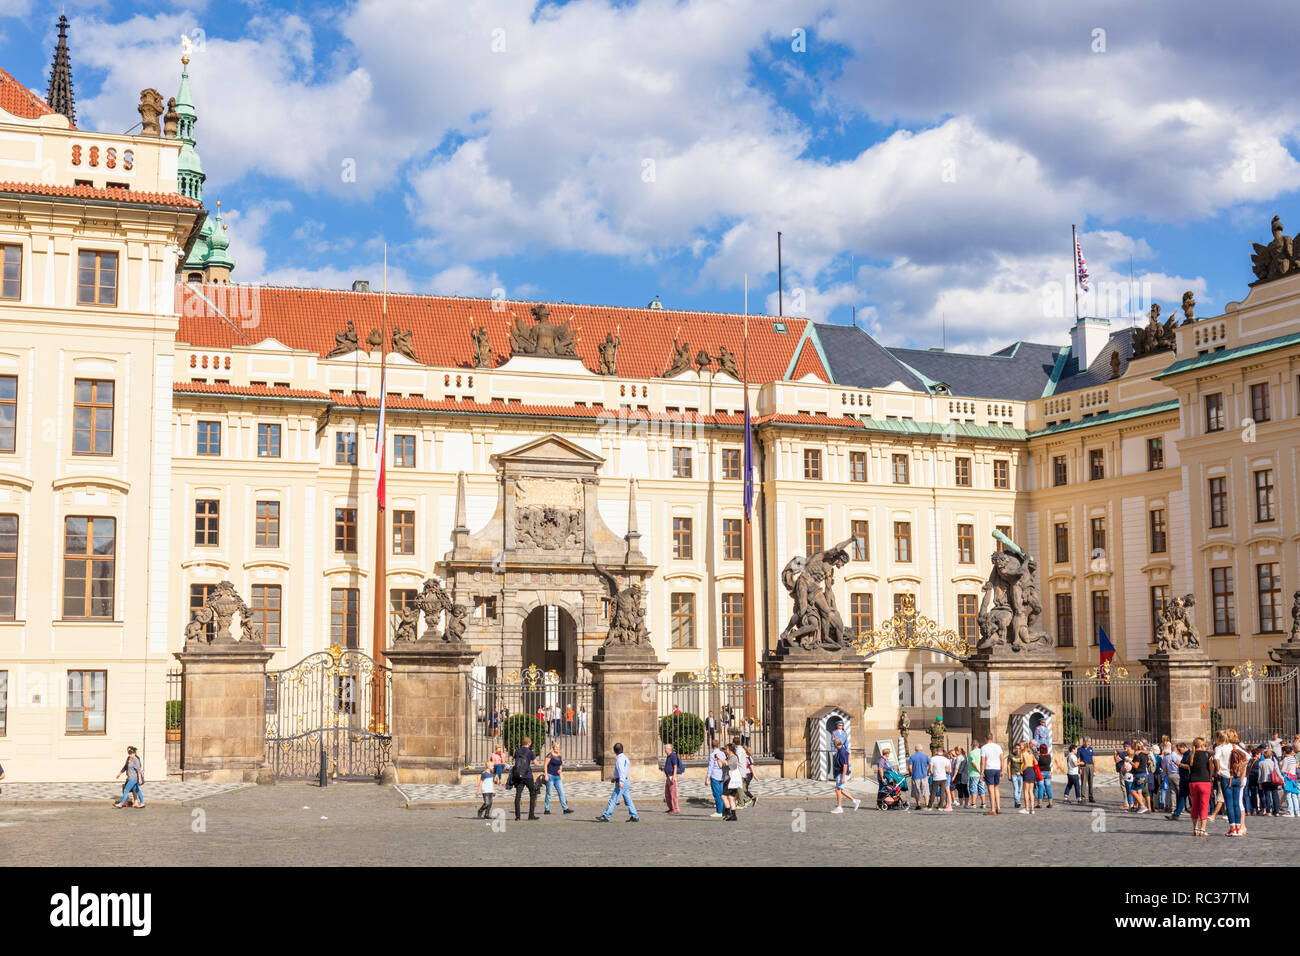 Le château de Prague Hradcany Square et premier cour avec le Palais des Archevêques Matthias Gate Le Château de Prague Pražský hrad Praha République Tchèque Europe Banque D'Images